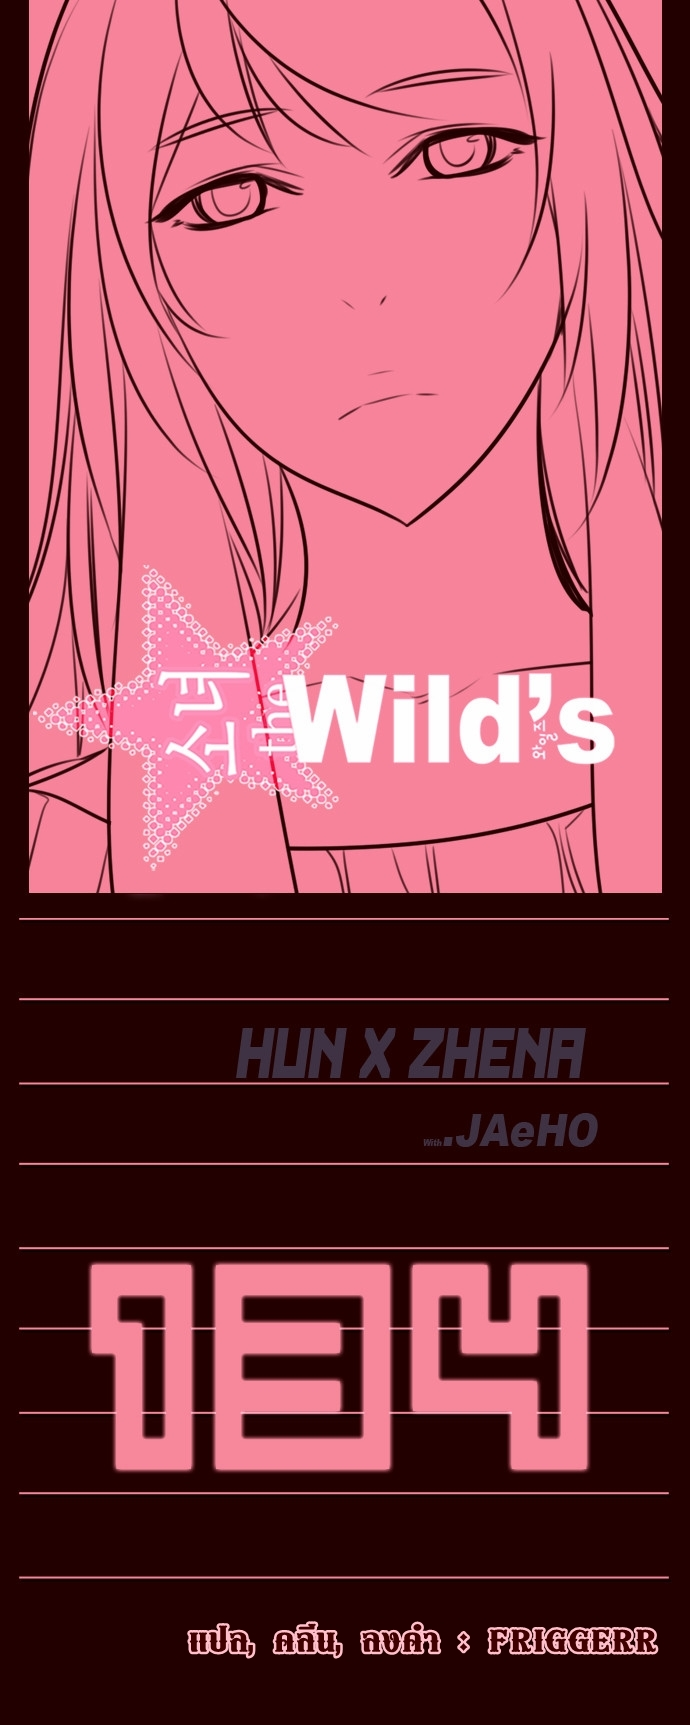 อ่าน Girls of the Wild’s